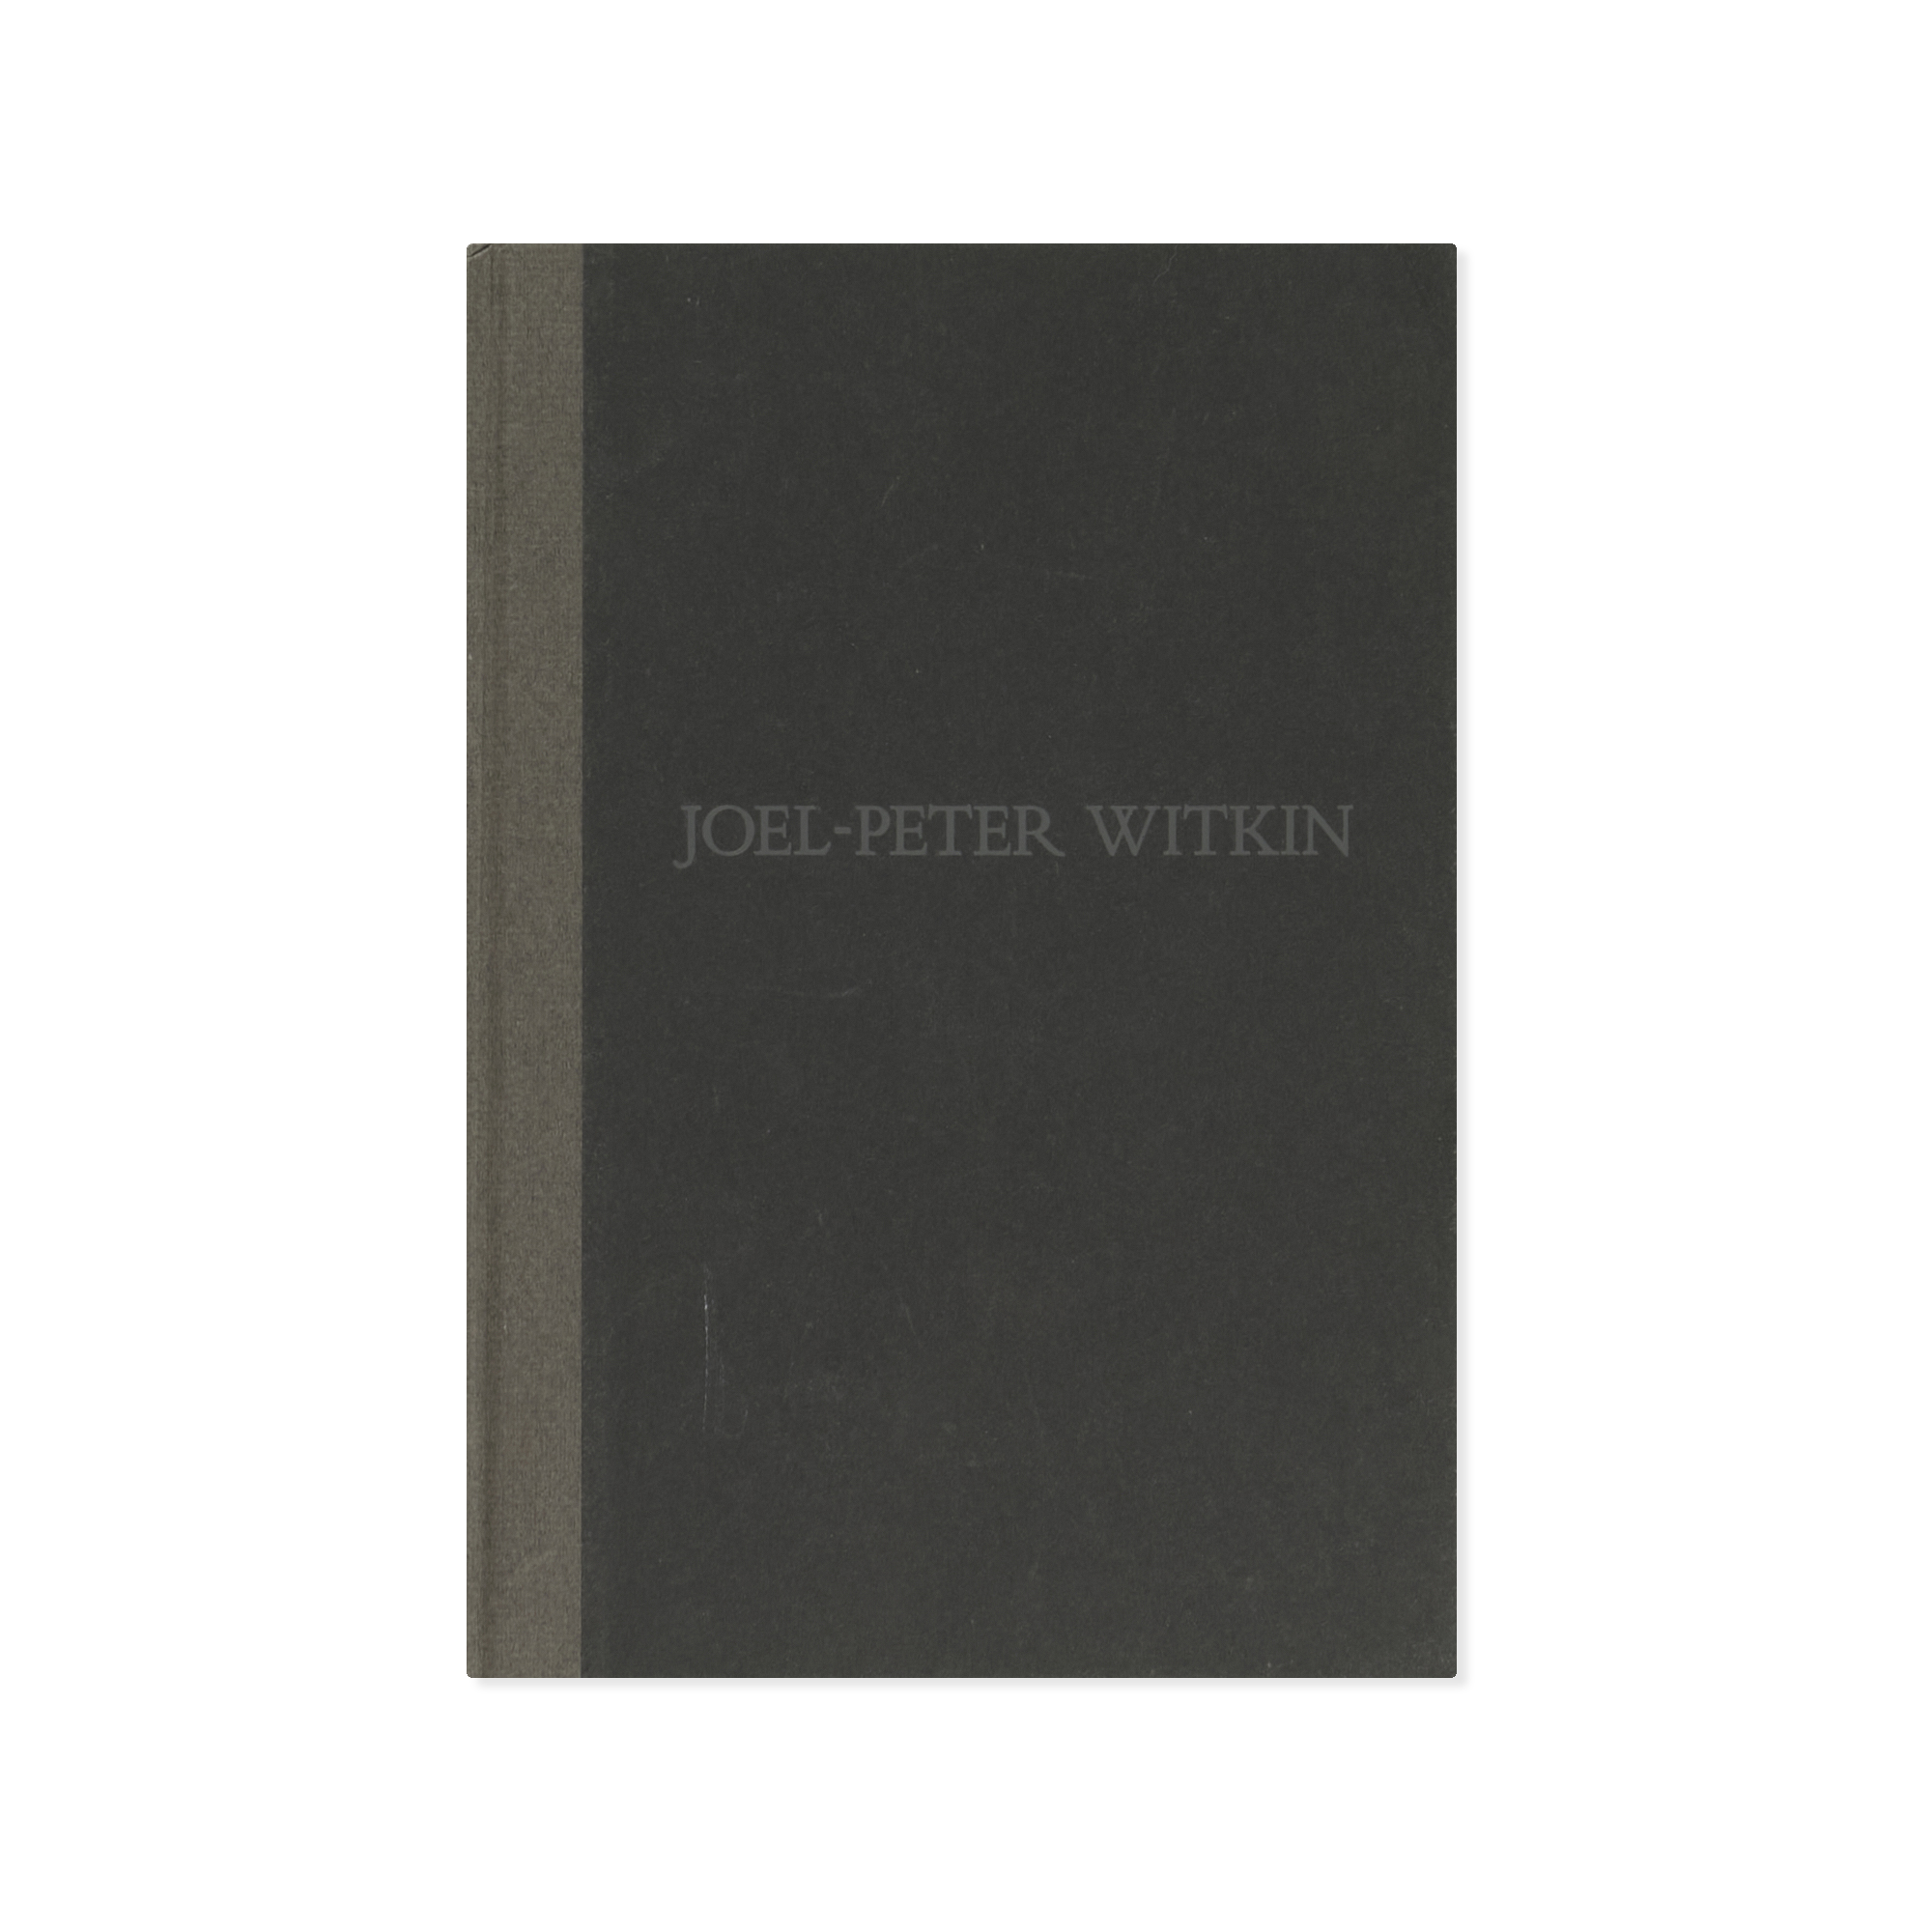 Joel-Peter Witkin — Wildenstein Tokyo